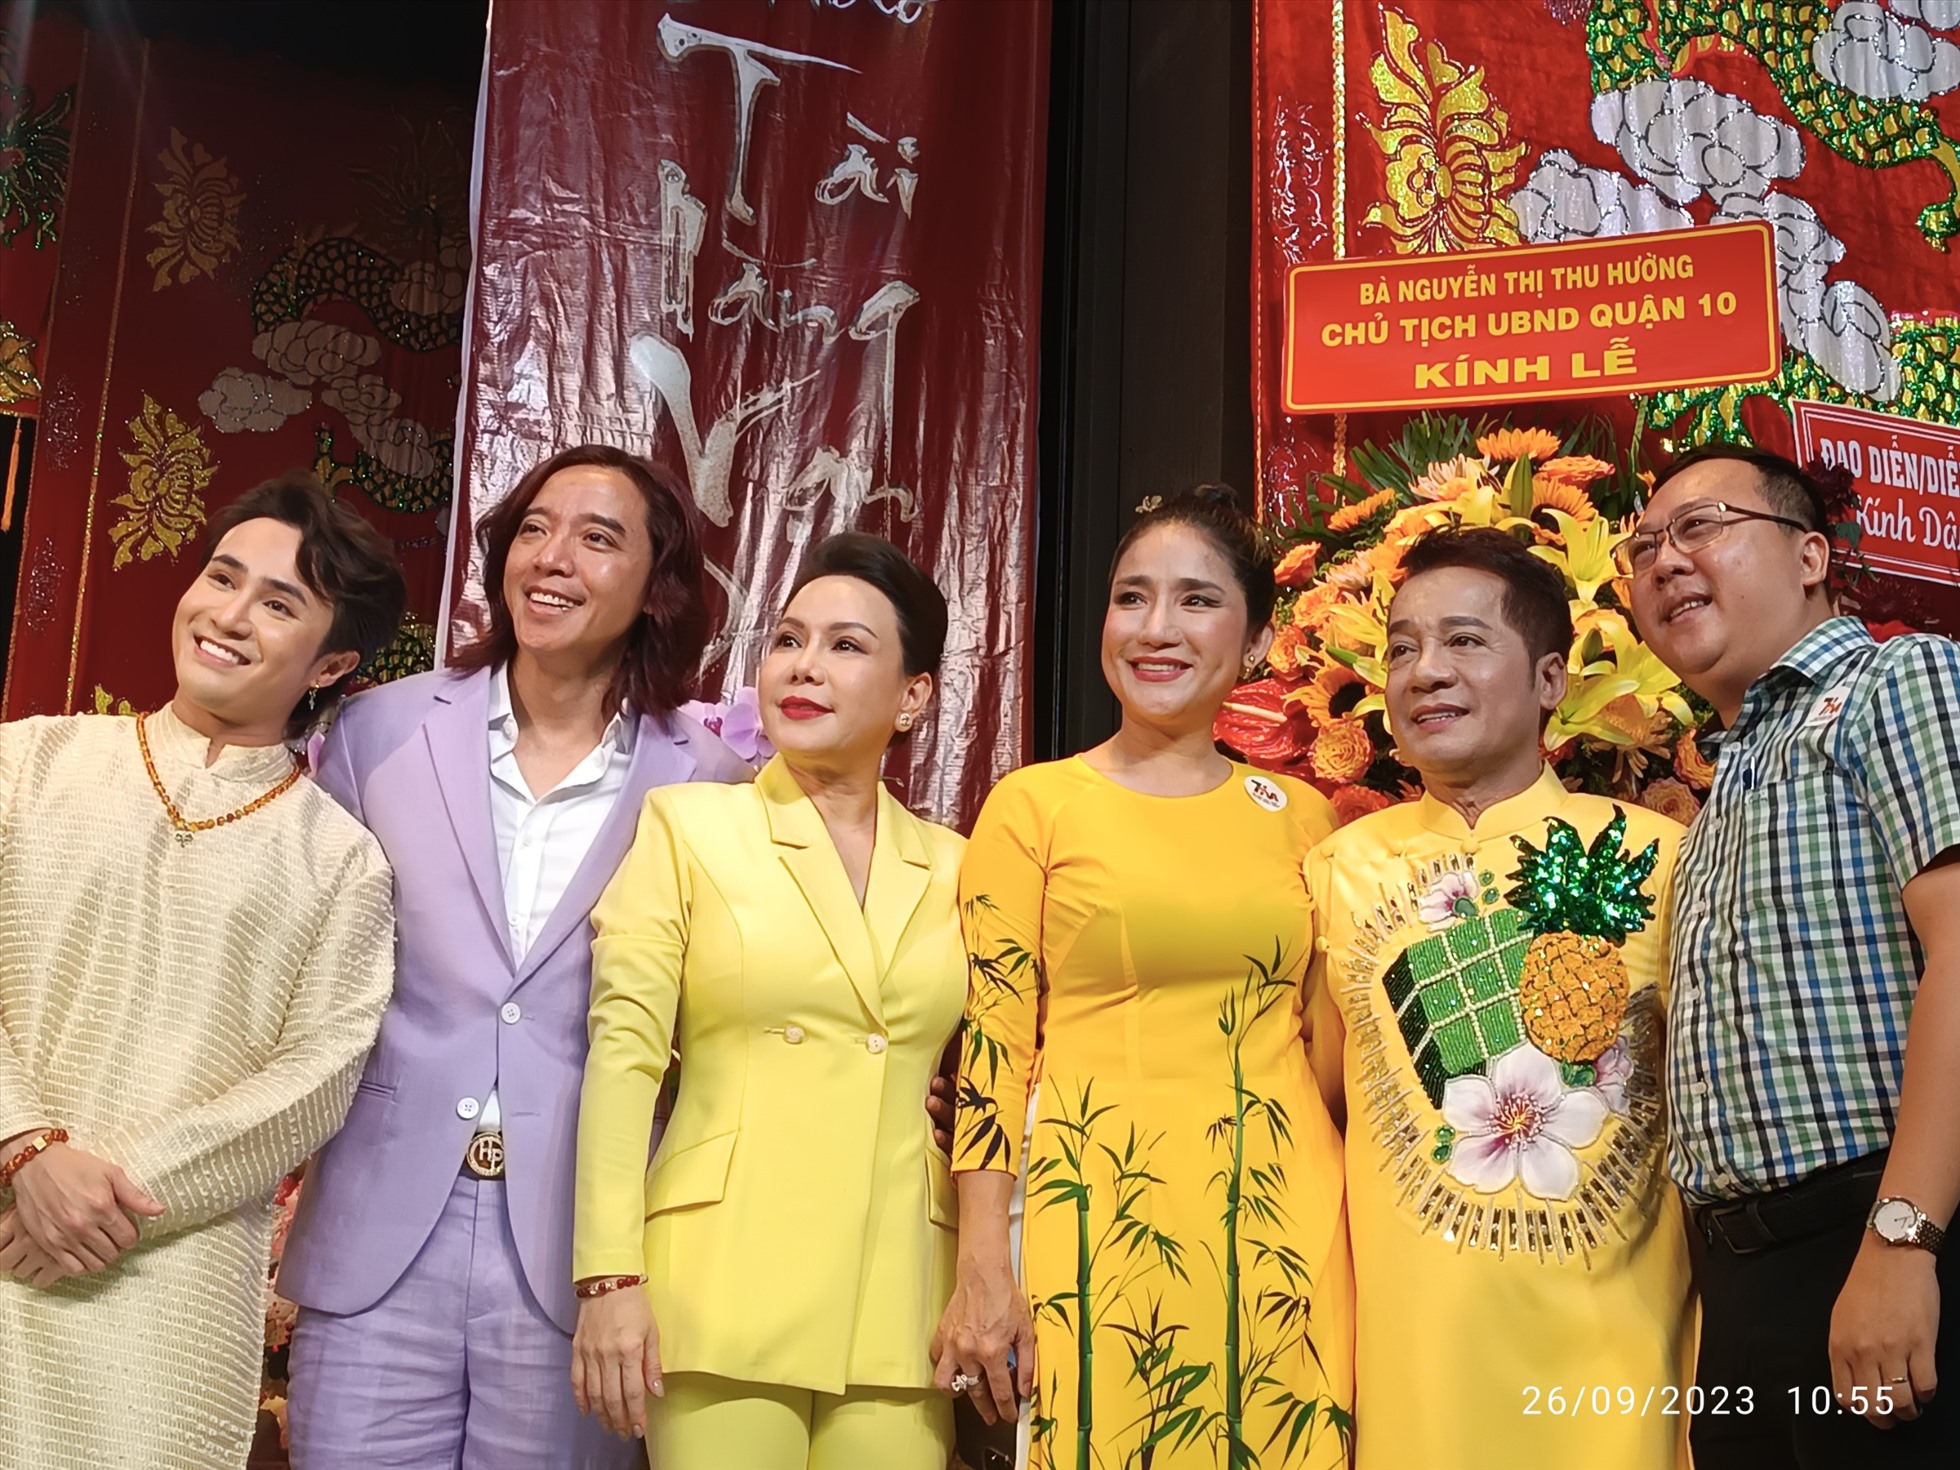 Buổi cúng giỗ Tổ tại sân khấu Trương Hùng Minh.